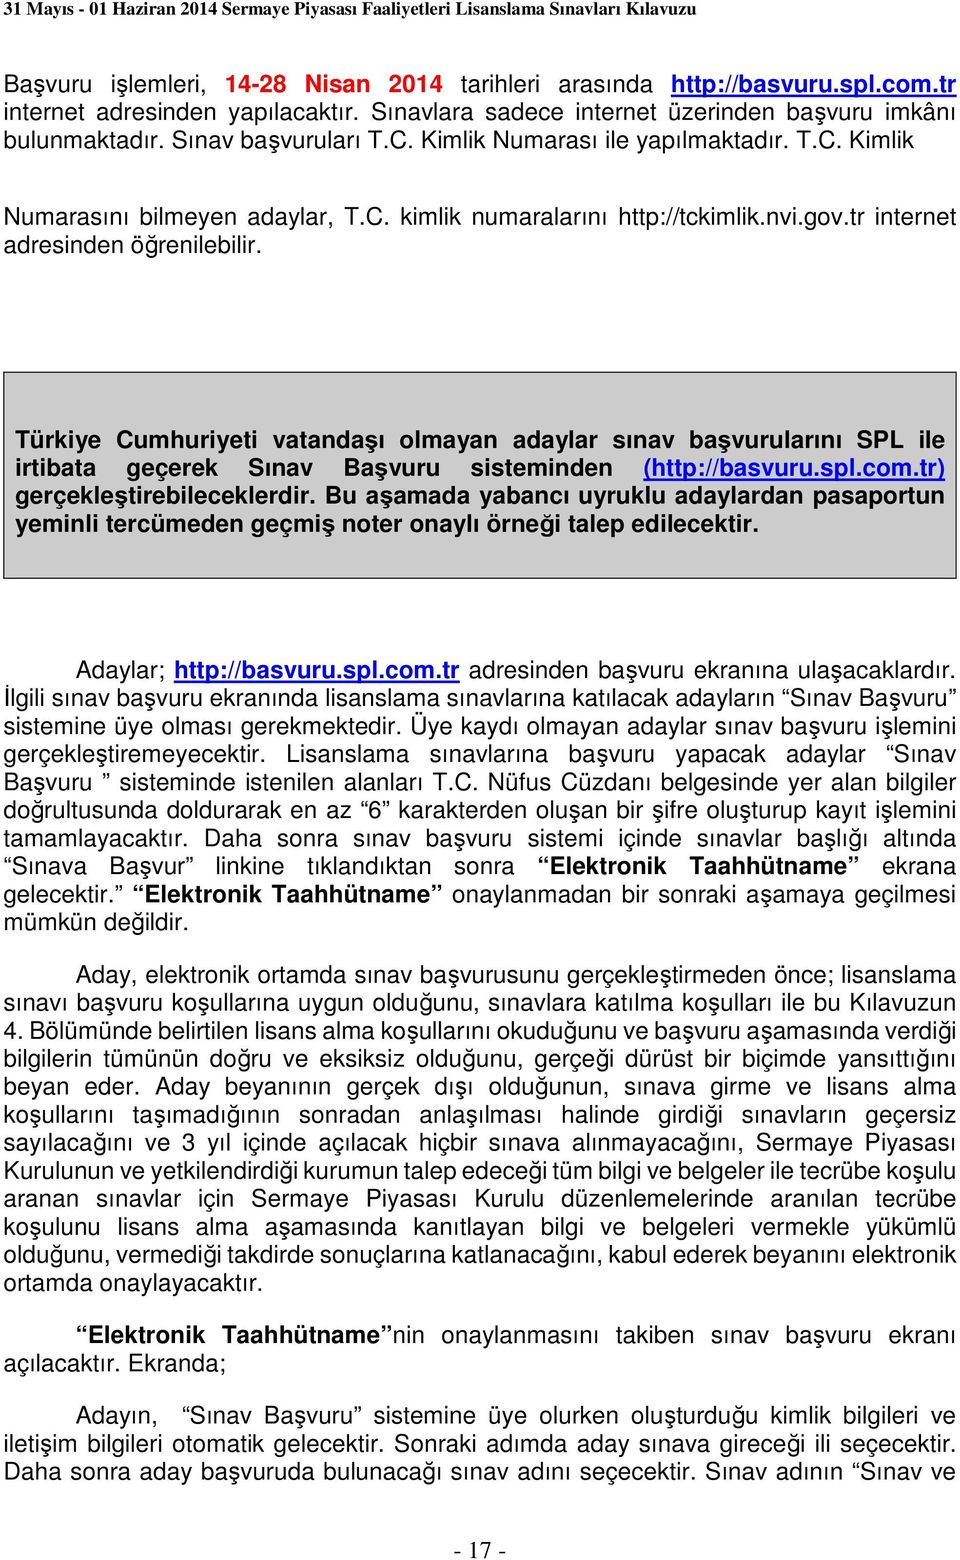 Türkiye Cumhuriyeti vatandaşı olmayan adaylar sınav başvurularını SPL ile irtibata geçerek Sınav Başvuru sisteminden (http://basvuru.spl.com.tr) gerçekleştirebileceklerdir.